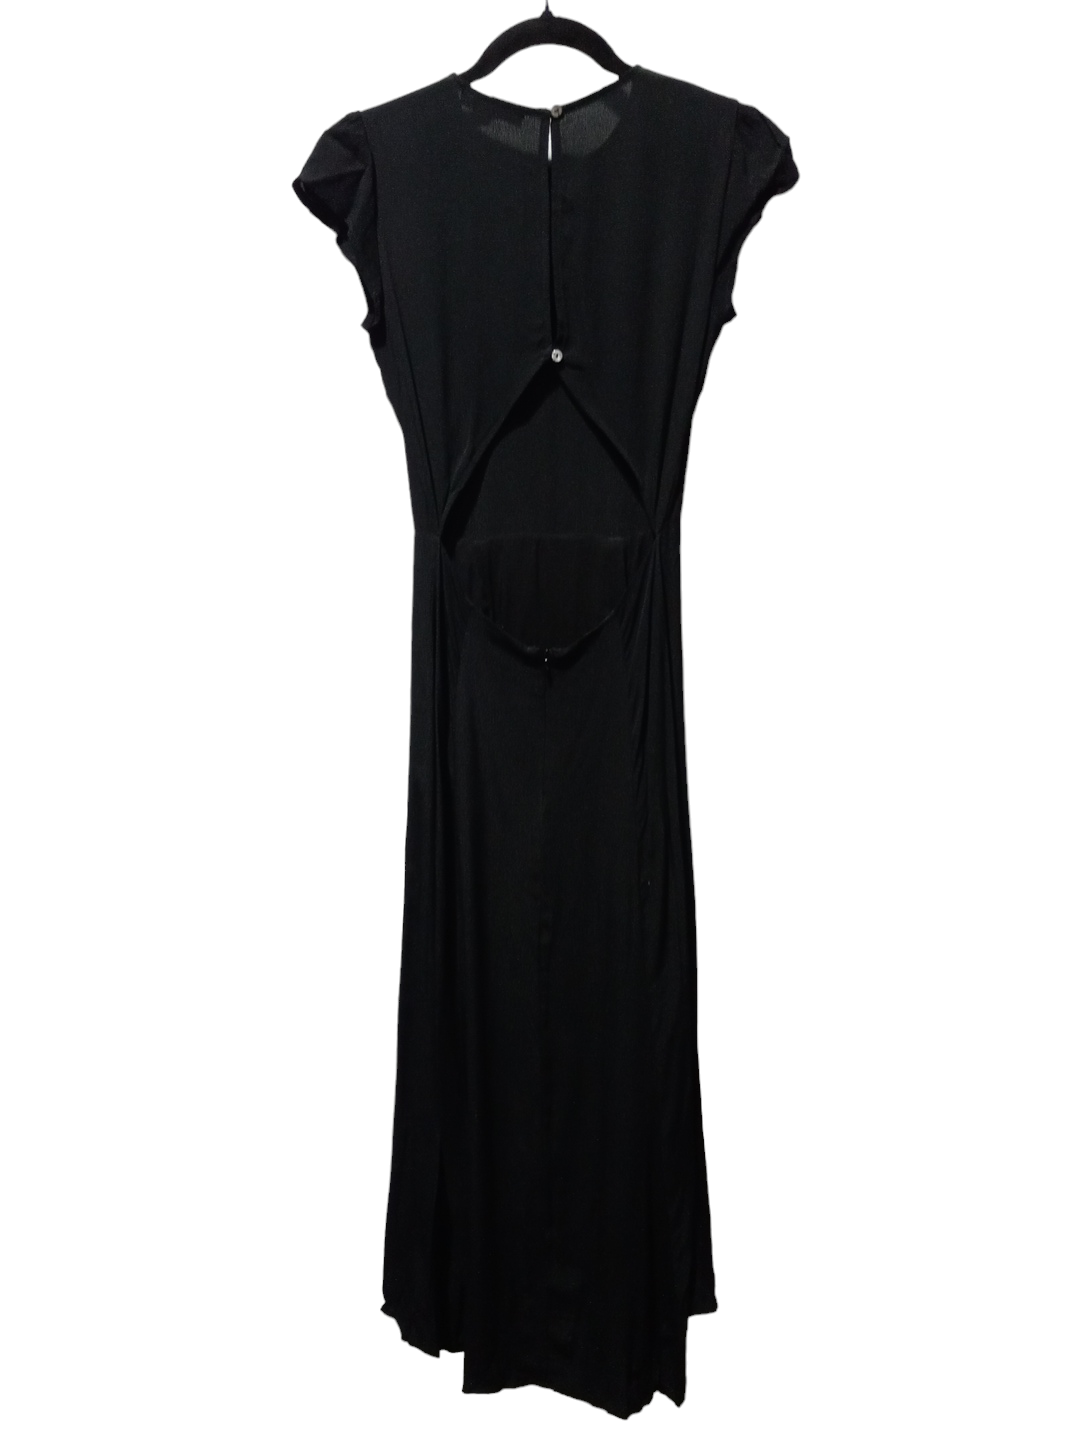 Black Dress Party Long Olivaceous, Size S